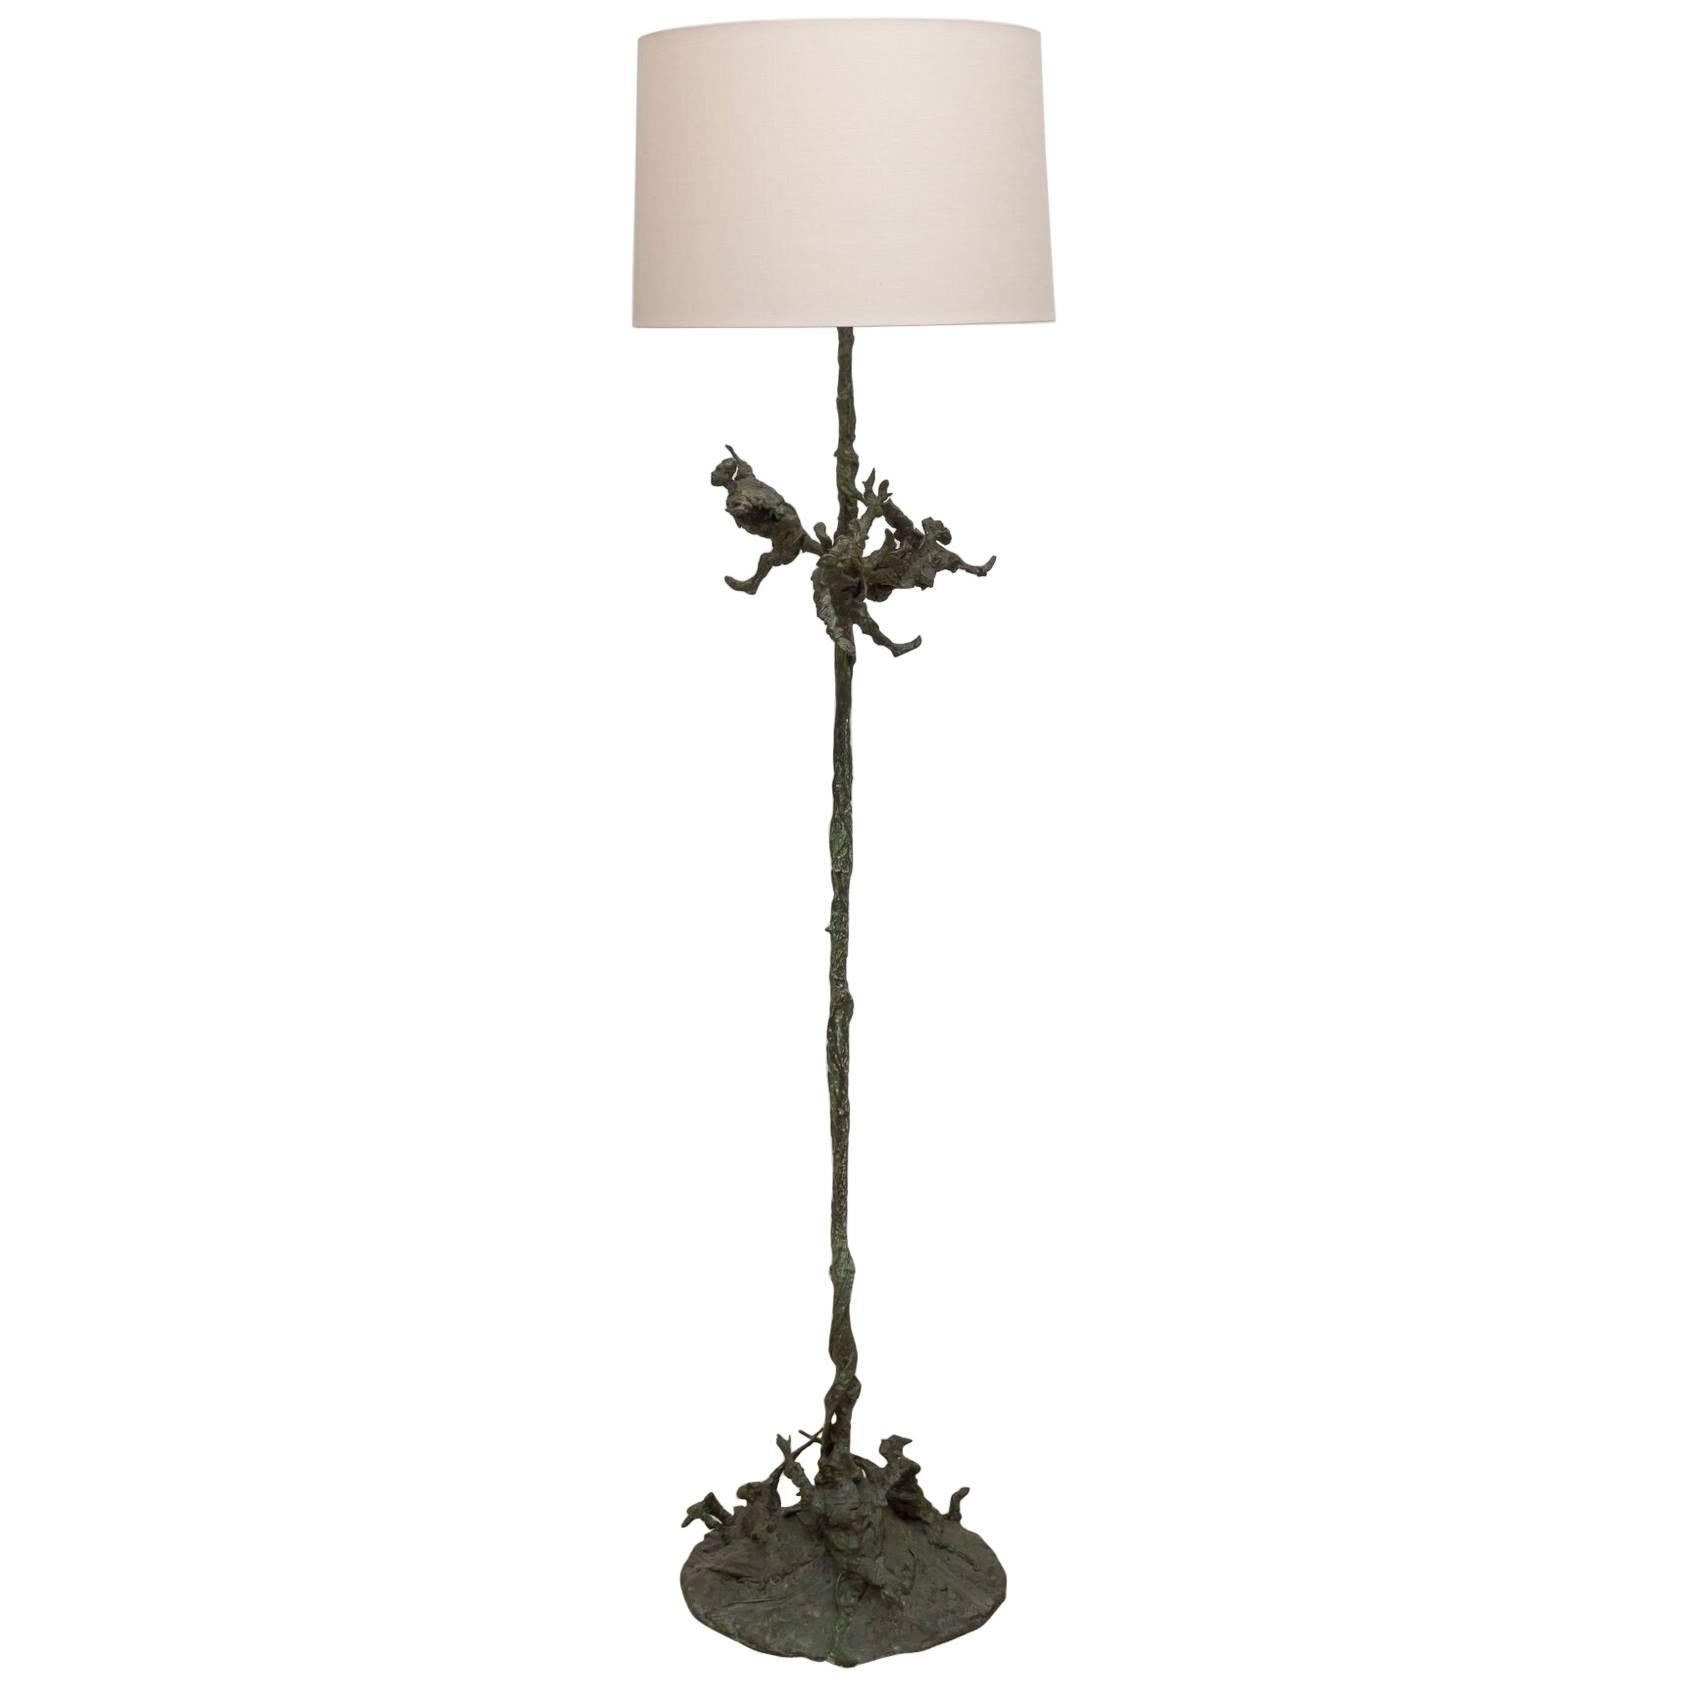 Roseline Granet Floor Lamp For Sale